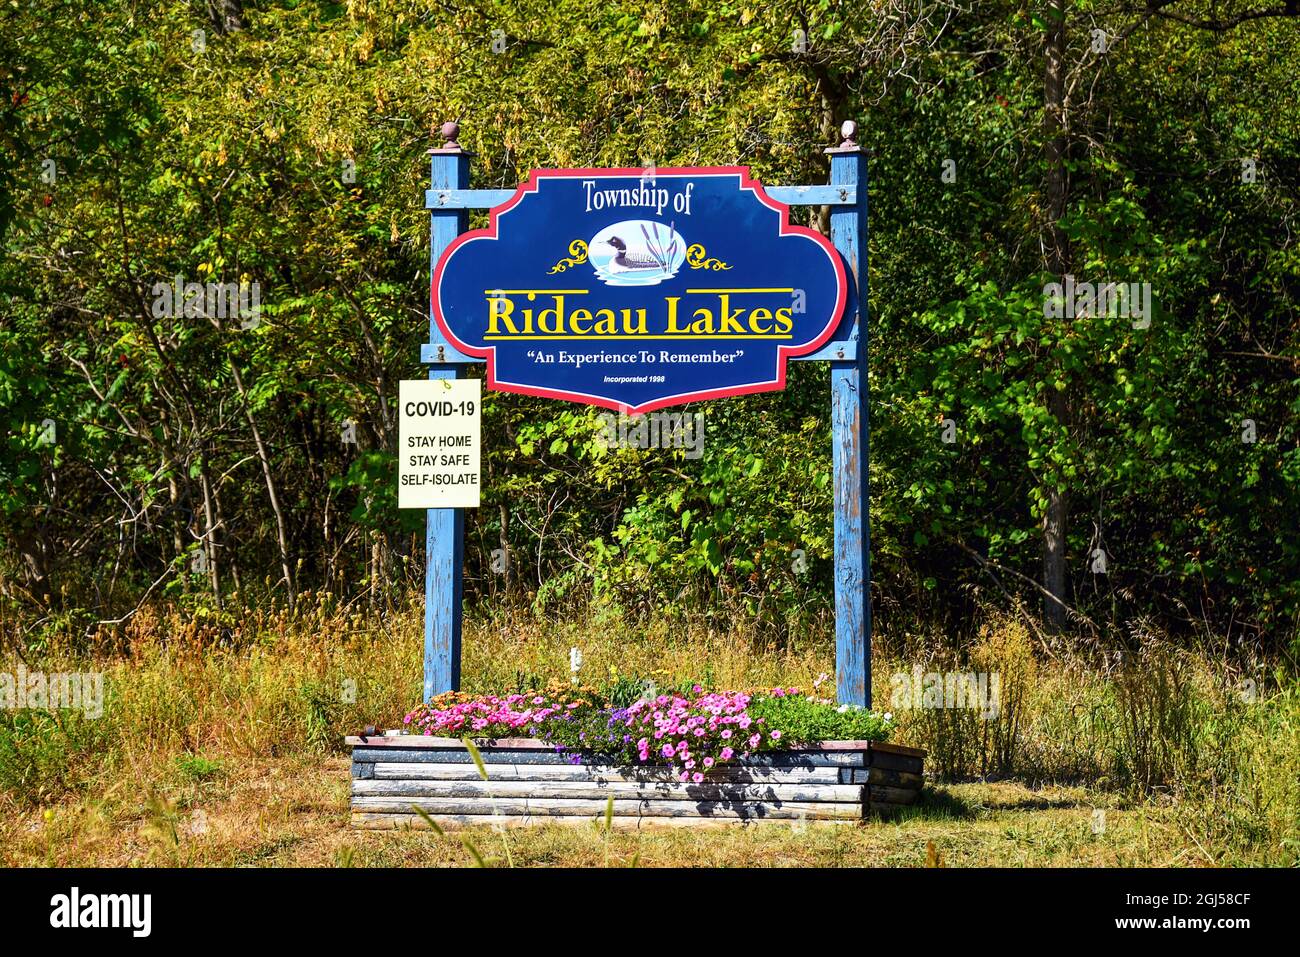 Rideau Lakes, Kanada - 4. September 2021: Willkommen in Rideau Lakes, einer kleinen Stadt im Osten von Ontario, mit einem Schild über Covid-19 Vorsichtsmaßnahmen. Stockfoto